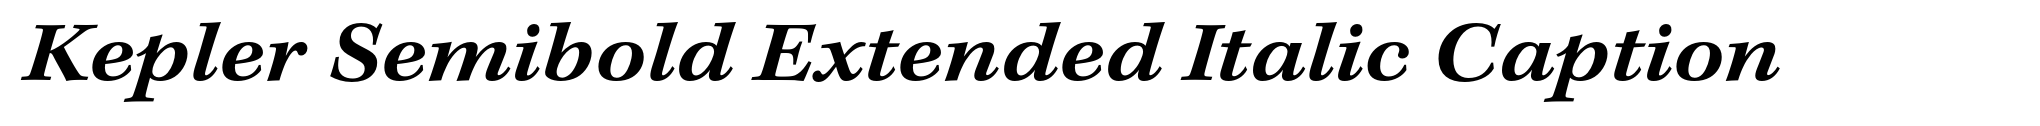 Kepler Semibold Extended Italic Caption image